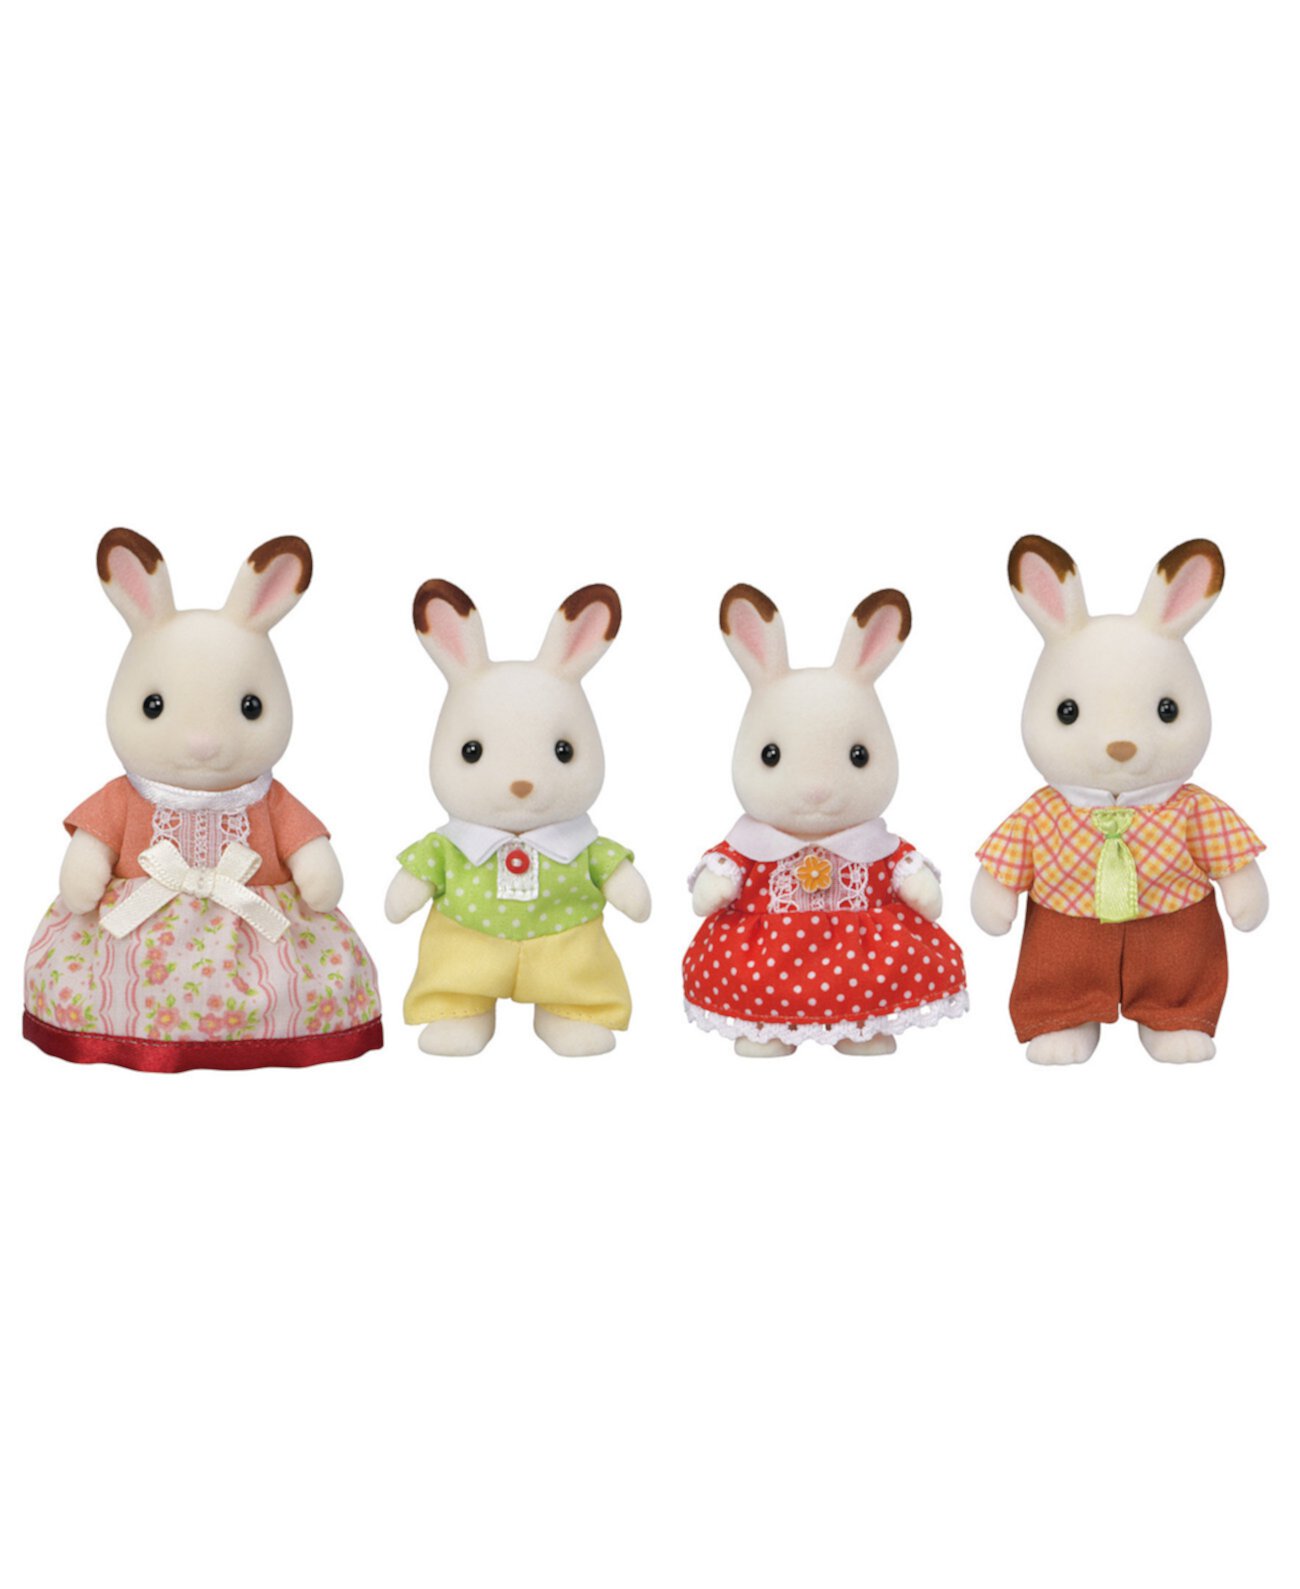 Семья шоколадных кроликов, набор из 4 коллекционных фигурок кукол Calico Critters